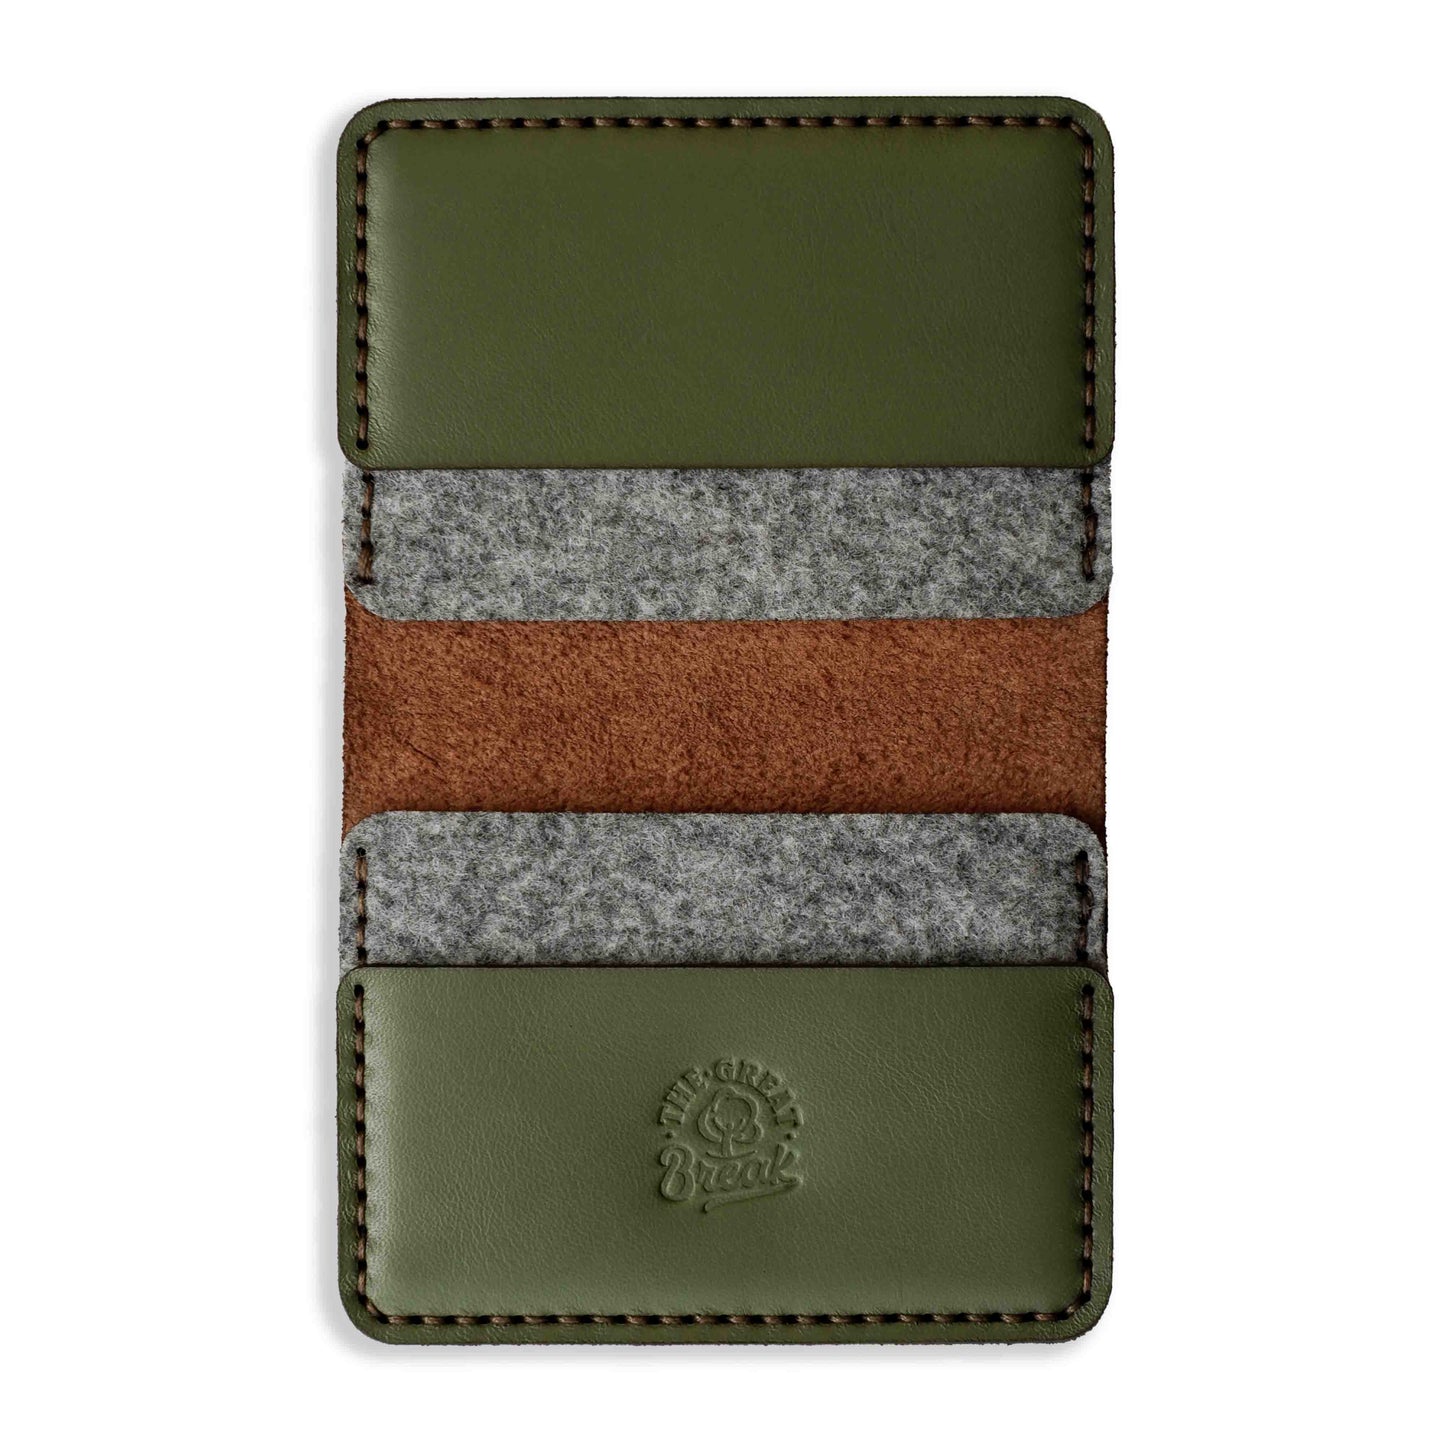 Leather Wallet - Floral Range